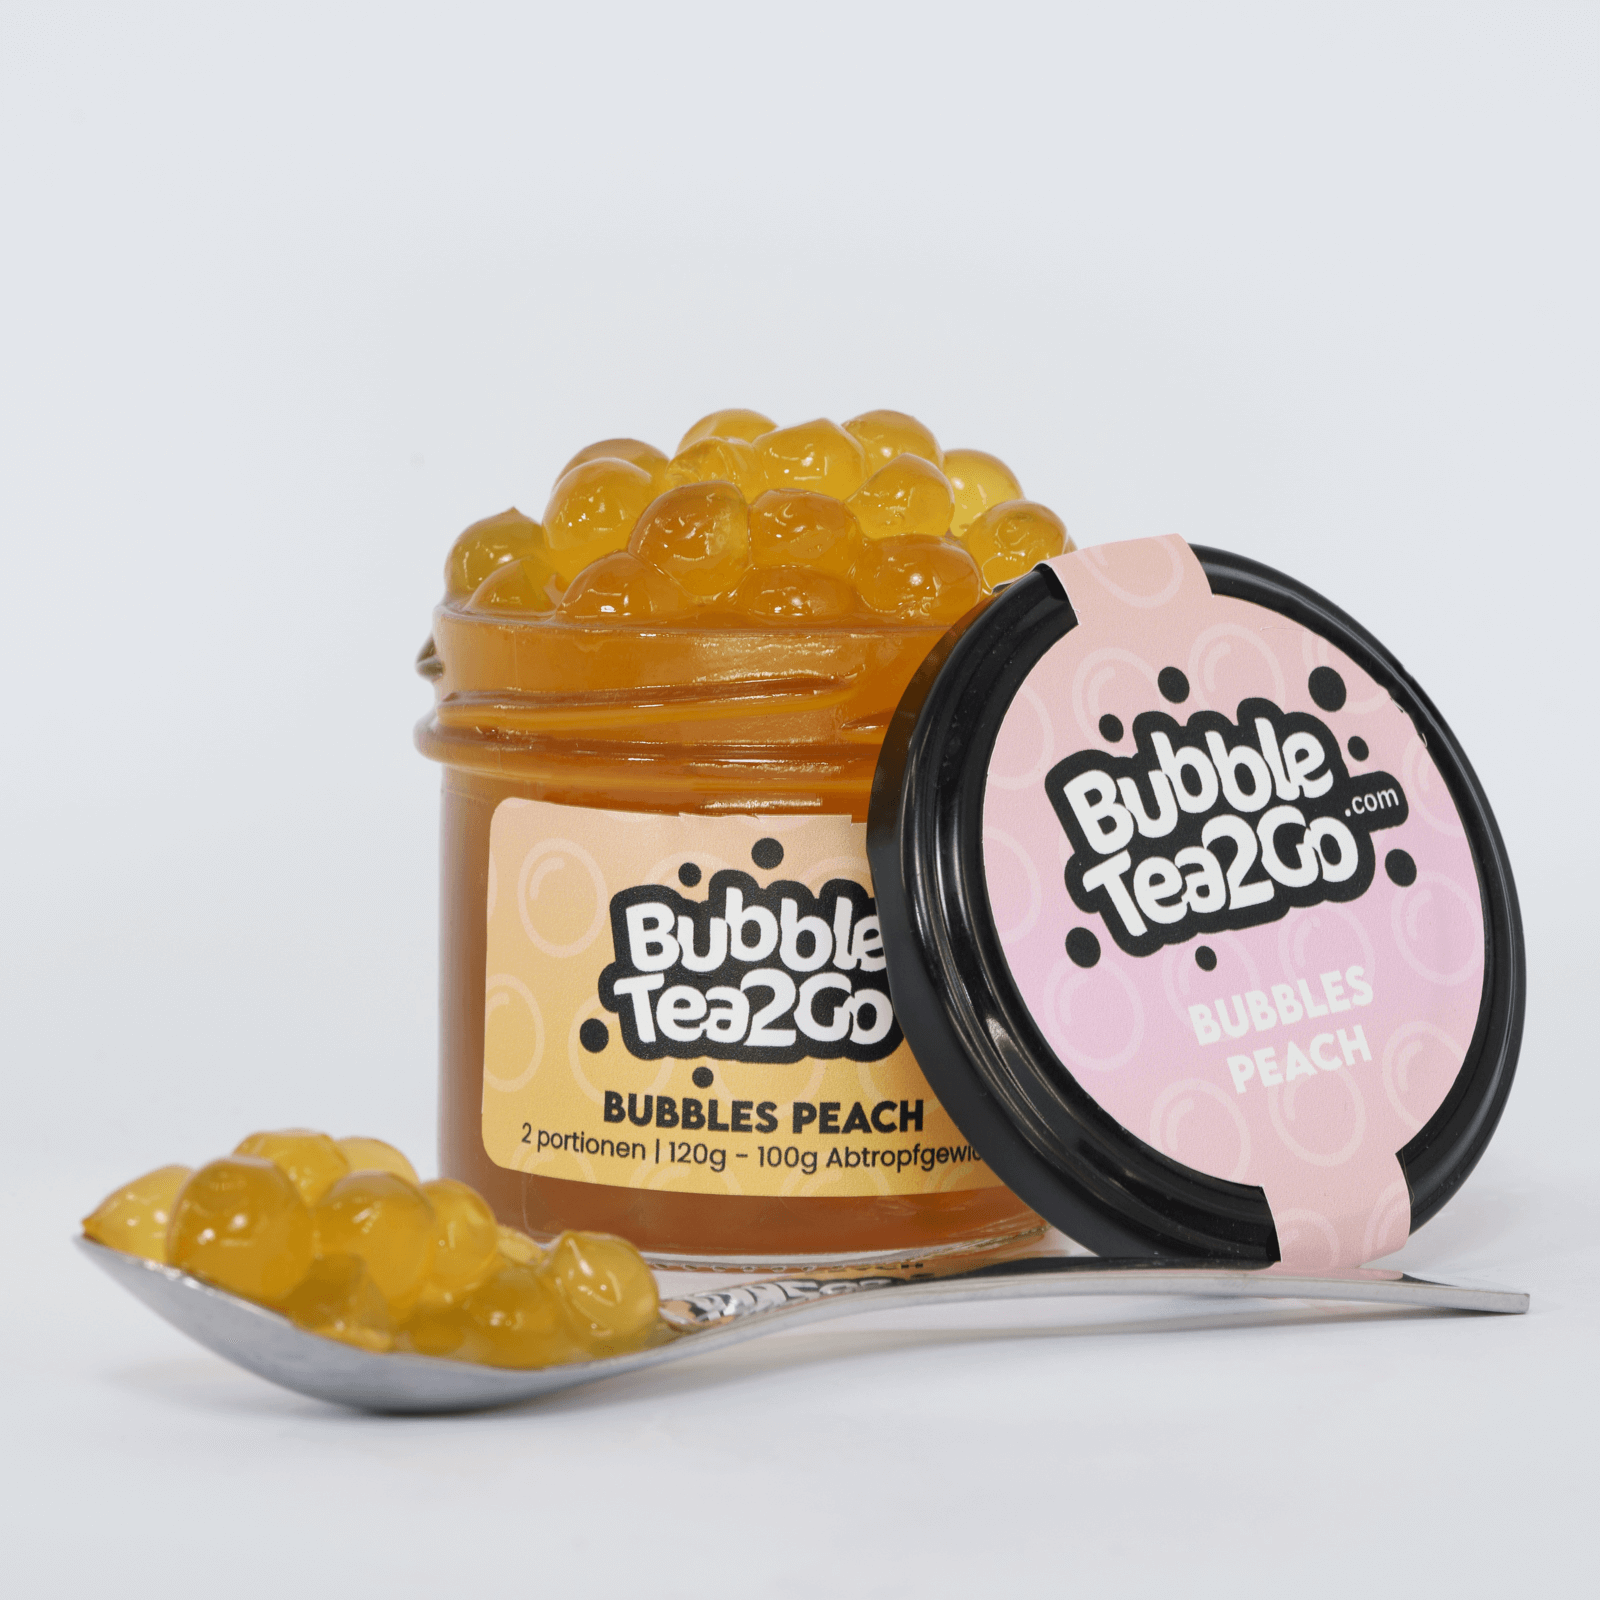 Bubbles - Peach 2 Portionen